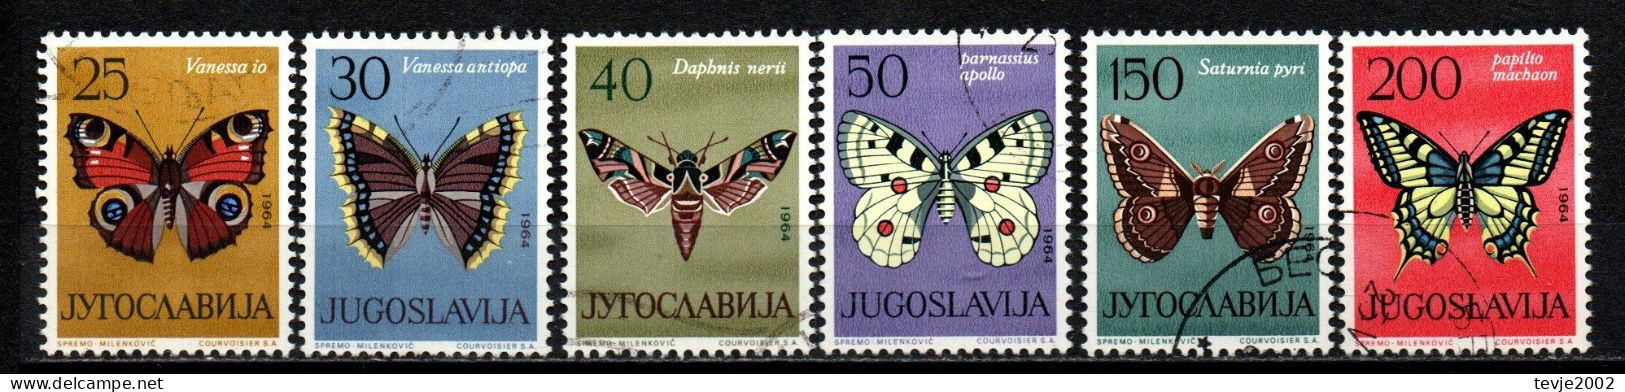 Jugoslawien 1964 - Mi.Nr. 1069 - 1074 - Gestempelt Used - Tiere Animals Schmetterlinge Butterflies - Papillons